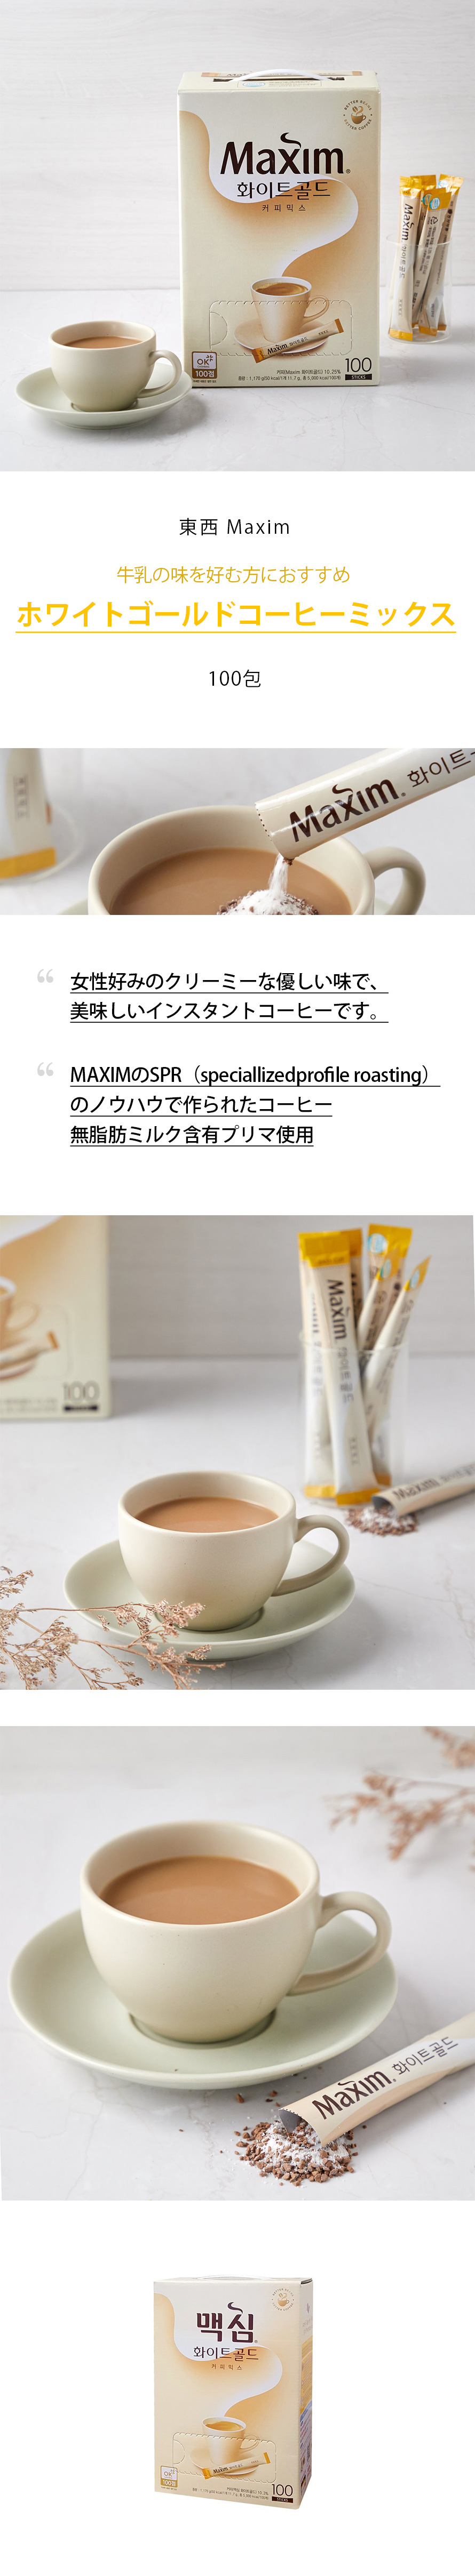 [東西] マキシム ホワイトゴールドコーヒーミックス(100包)